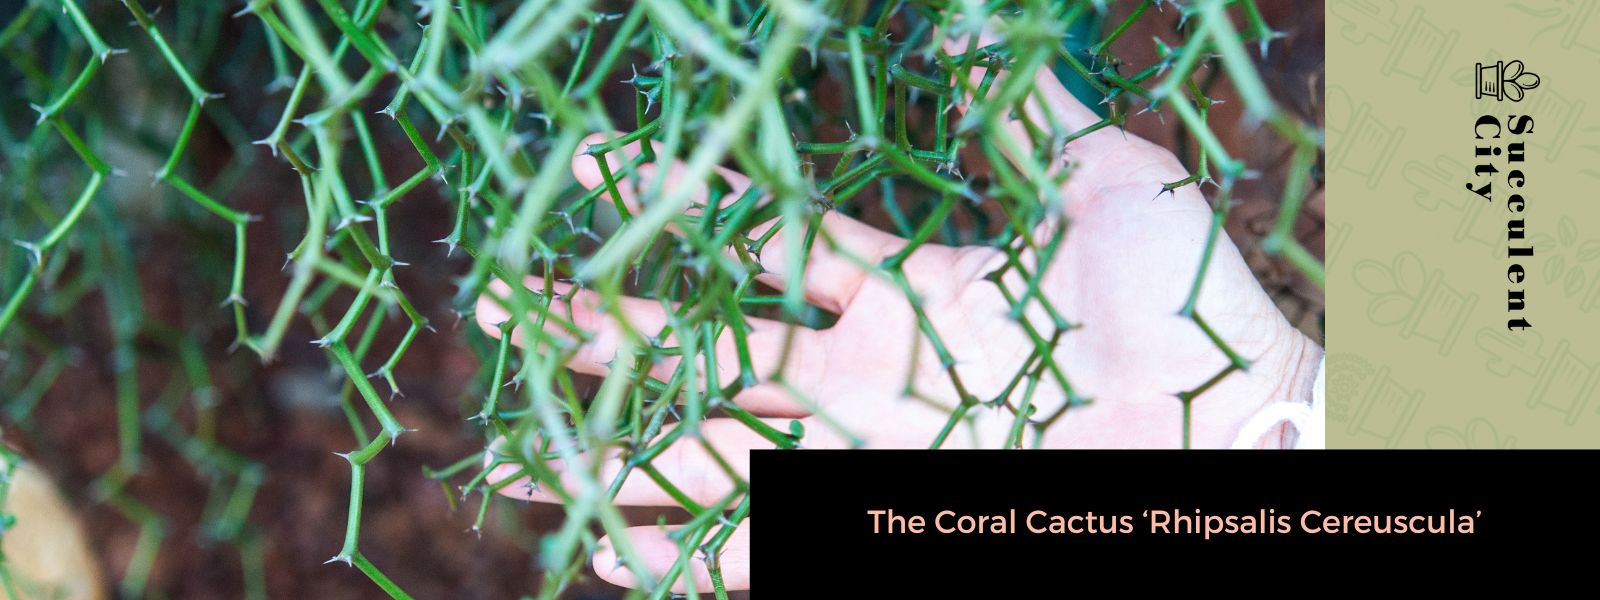 El cactus coralino 'Rhipsalis Cereuscula'